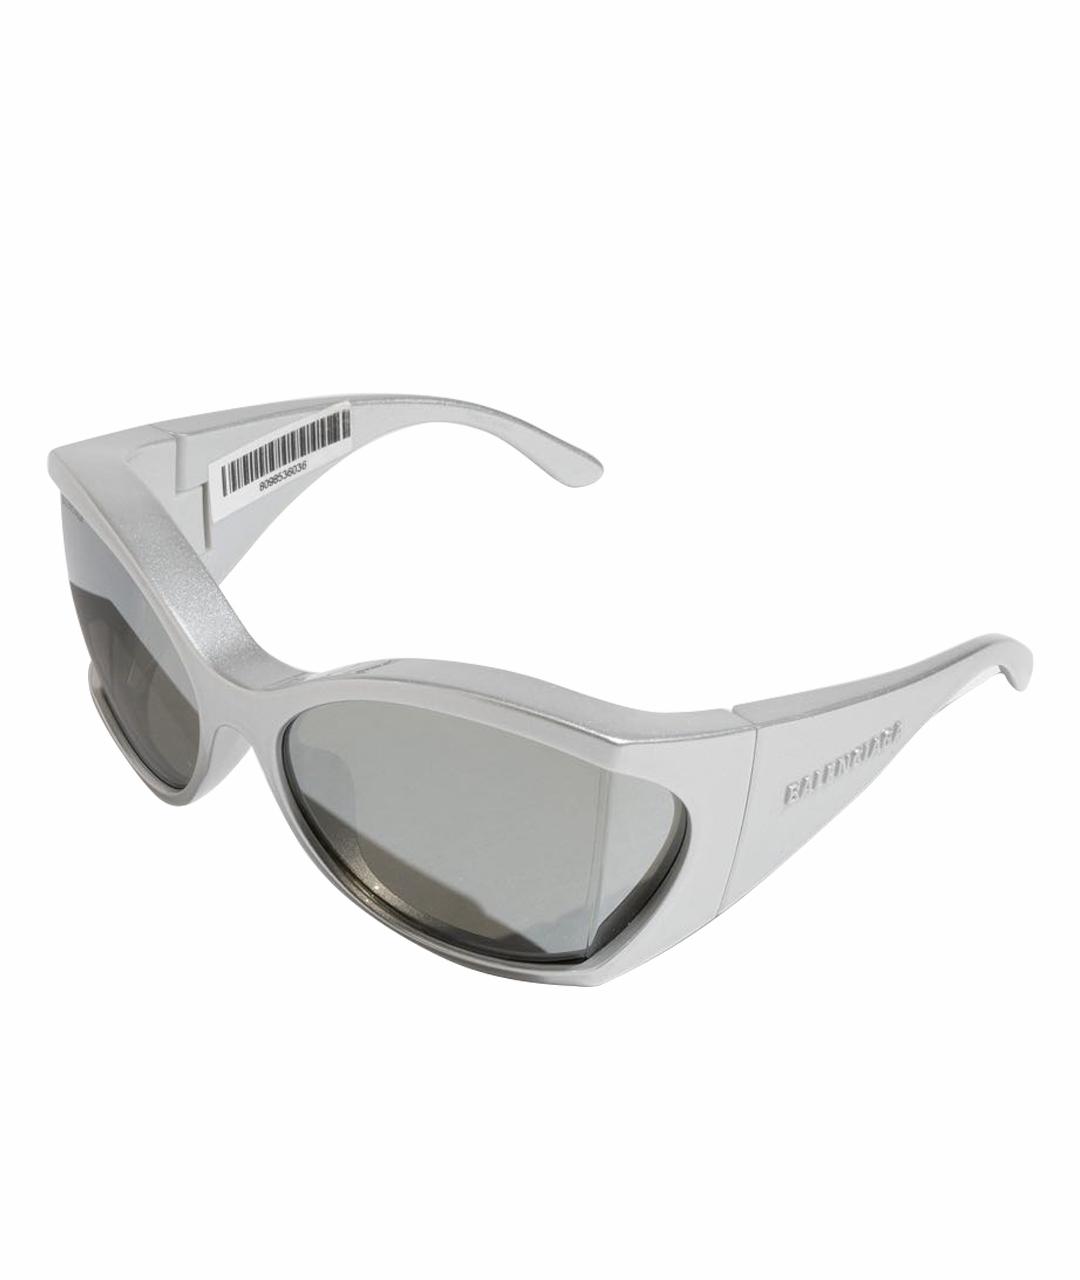 BALENCIAGA Серебряные пластиковые солнцезащитные очки, фото 1